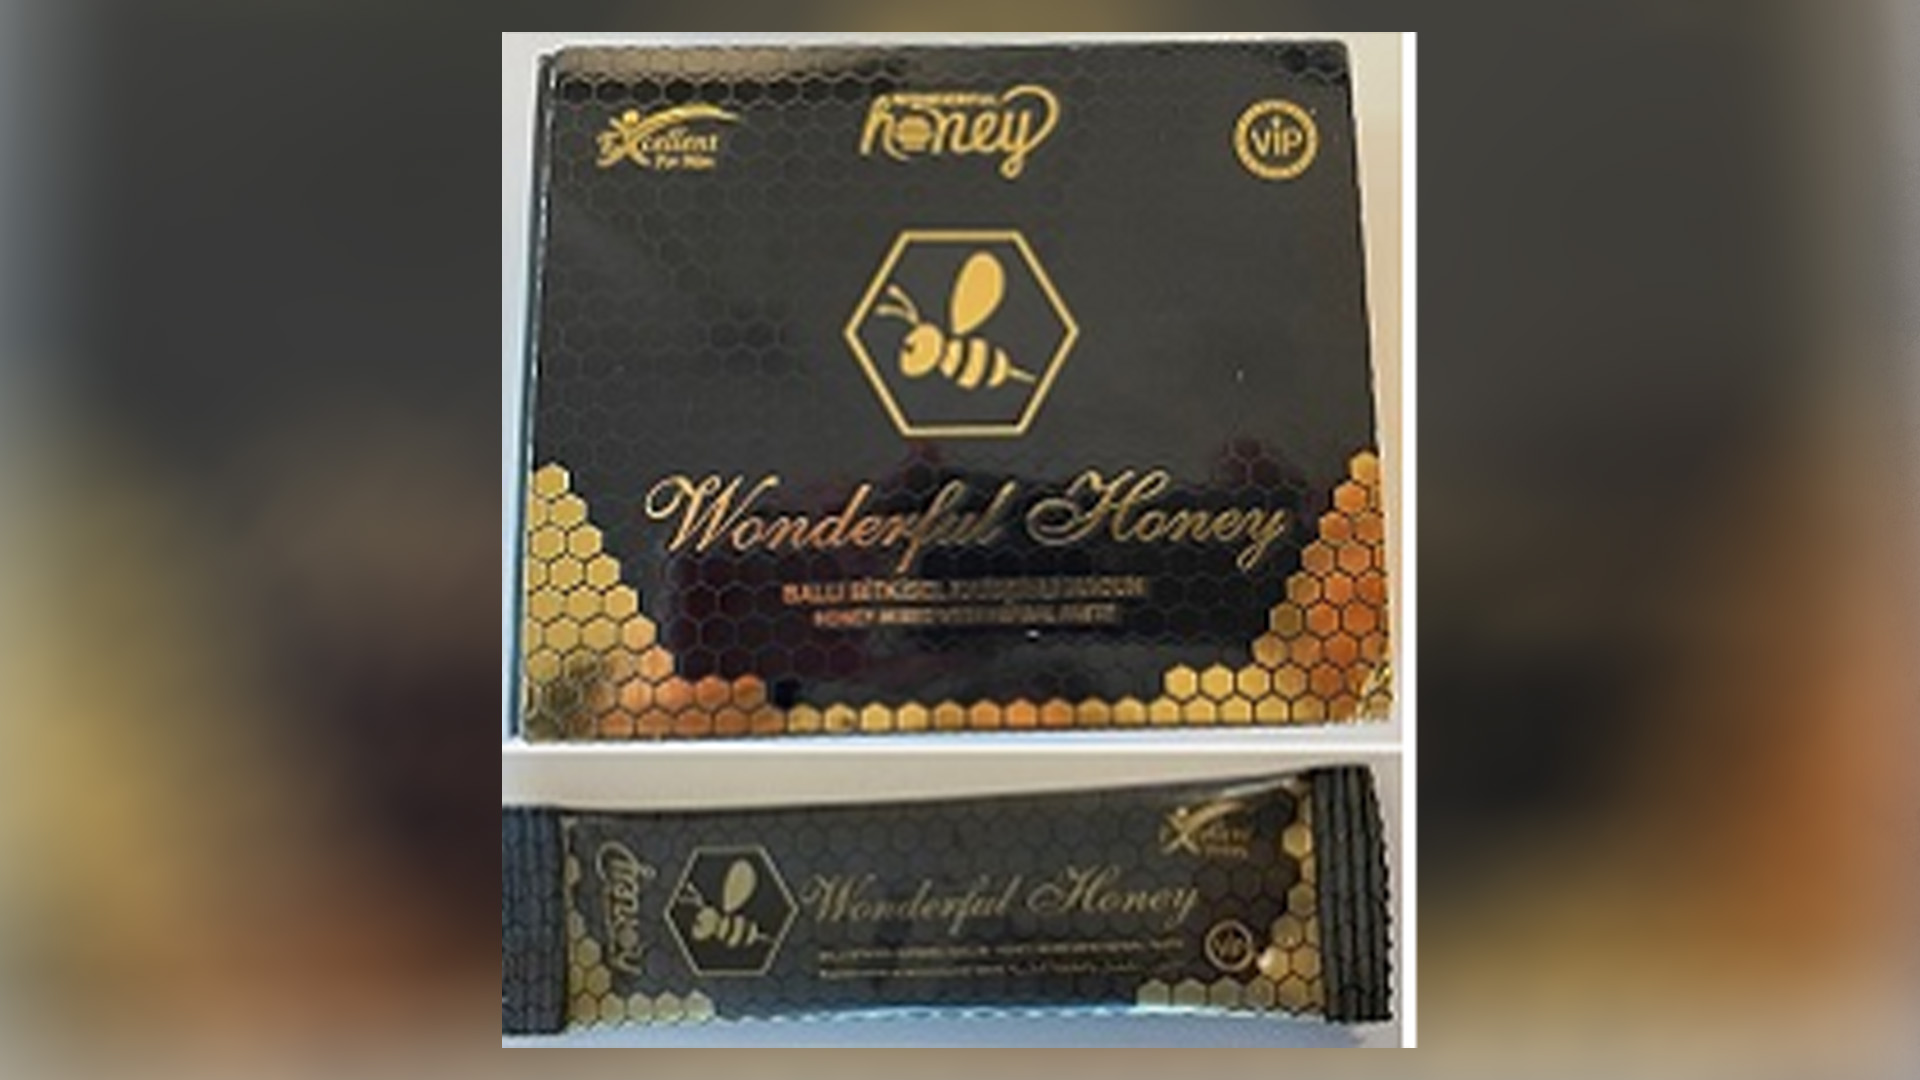 Wonderful Honey est un produit non homologué pour améliorer la performance sexuelle et il fait l'objet d'un avis de mise en garde par Santé Canada.